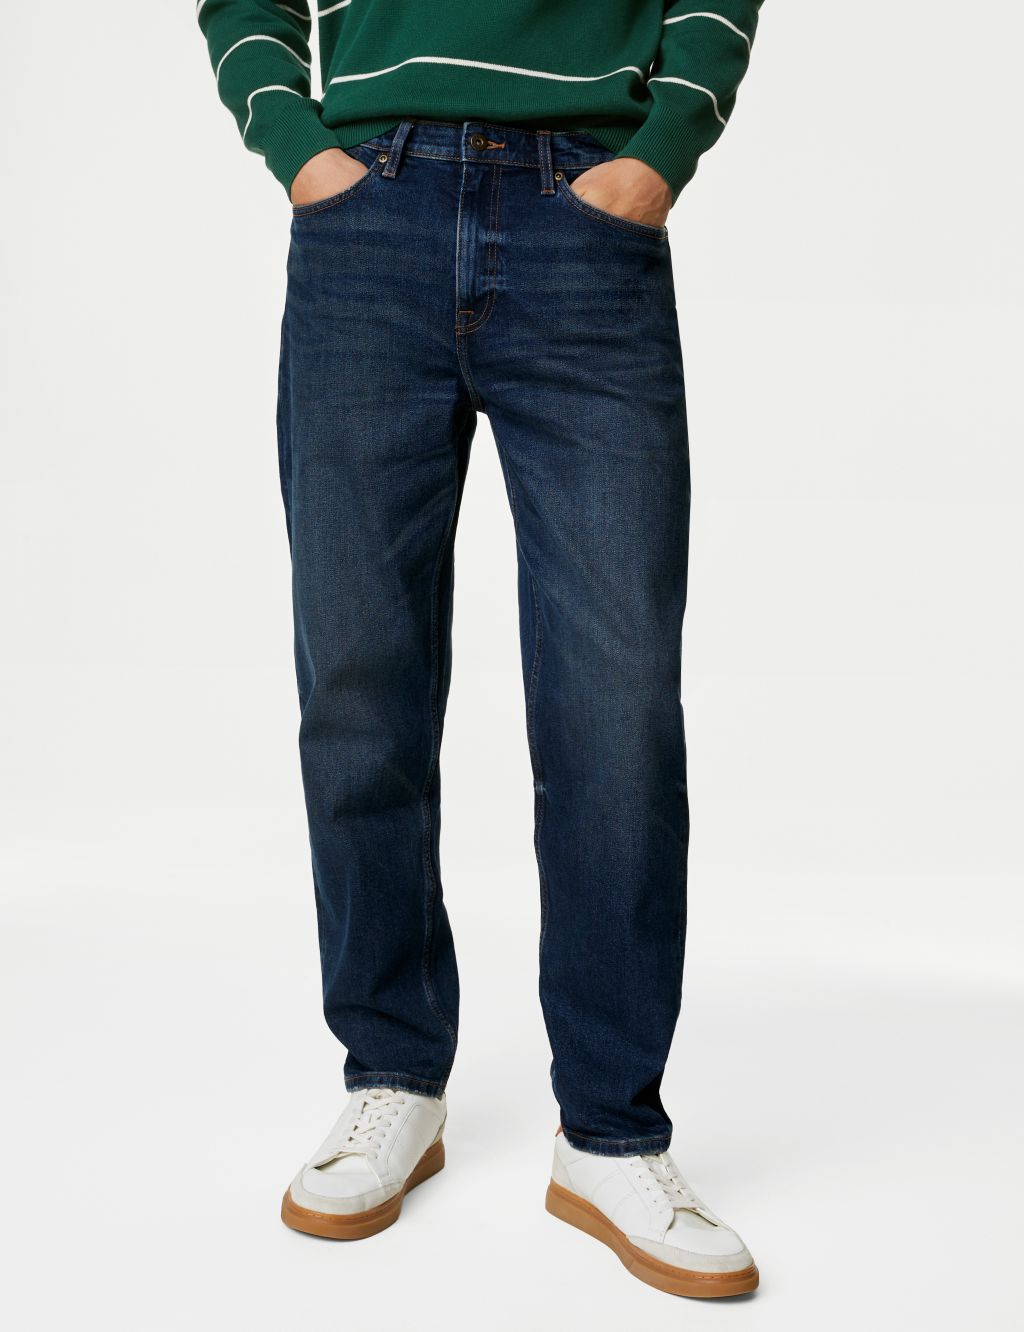 Shop Men’s Navy Jeans | M&S